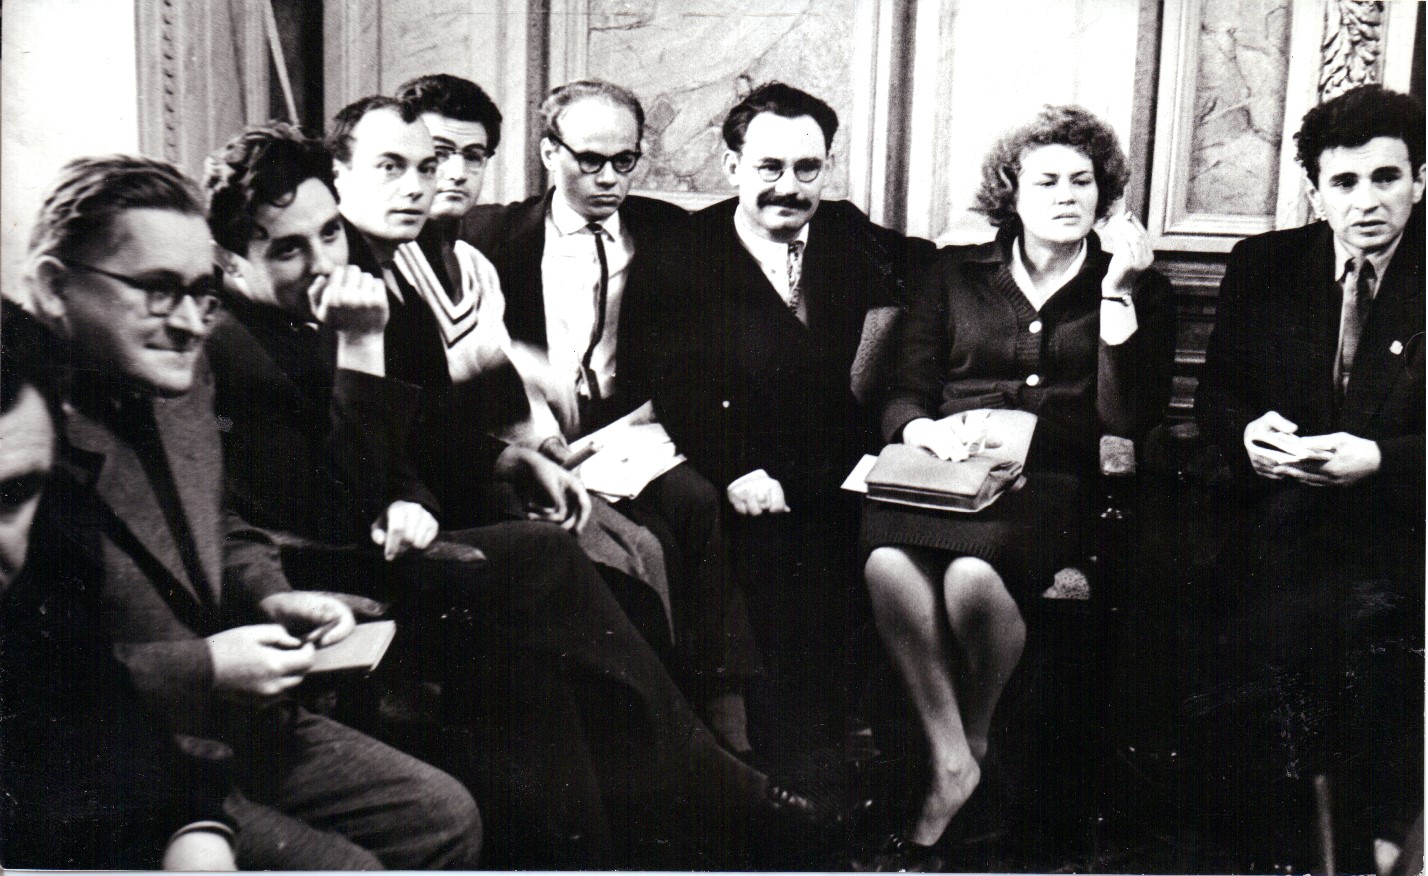 Ivan Dziuba,..., Mykola Vinhranovsky,..., Ivan Drach, Ivan Svitlychny, Lina Kostenko, Yevhen Sverstiuk at the Ukrainian Writers Union, 1960s. 